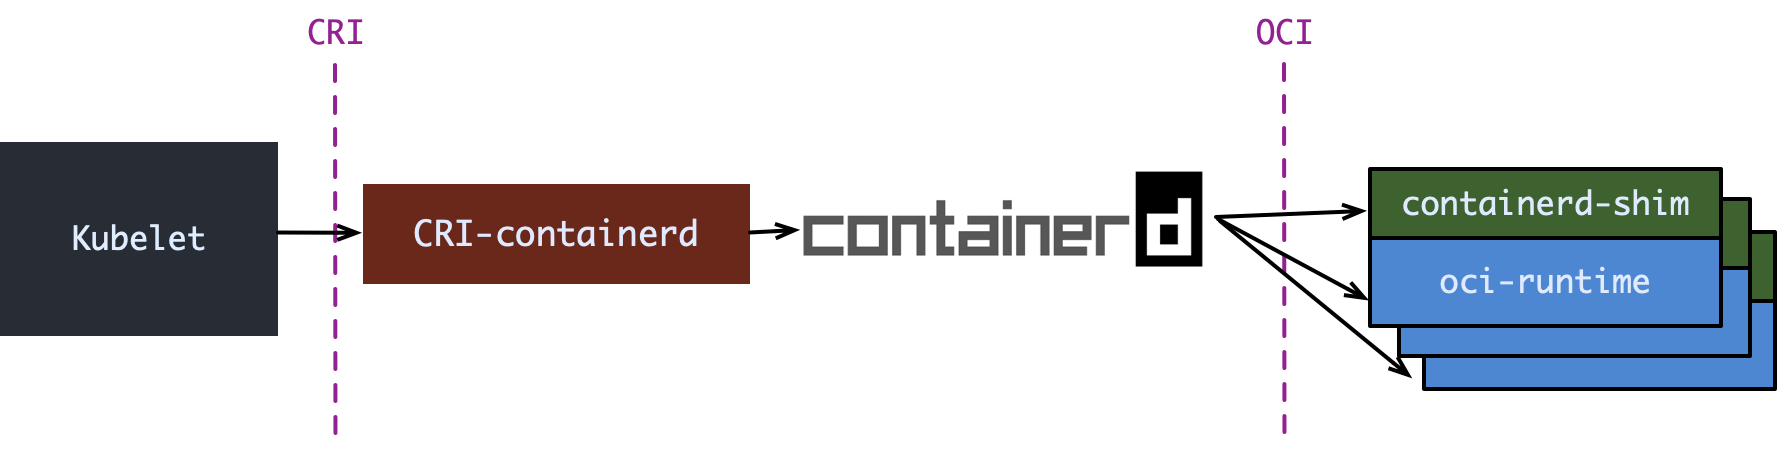 containerd 1.0